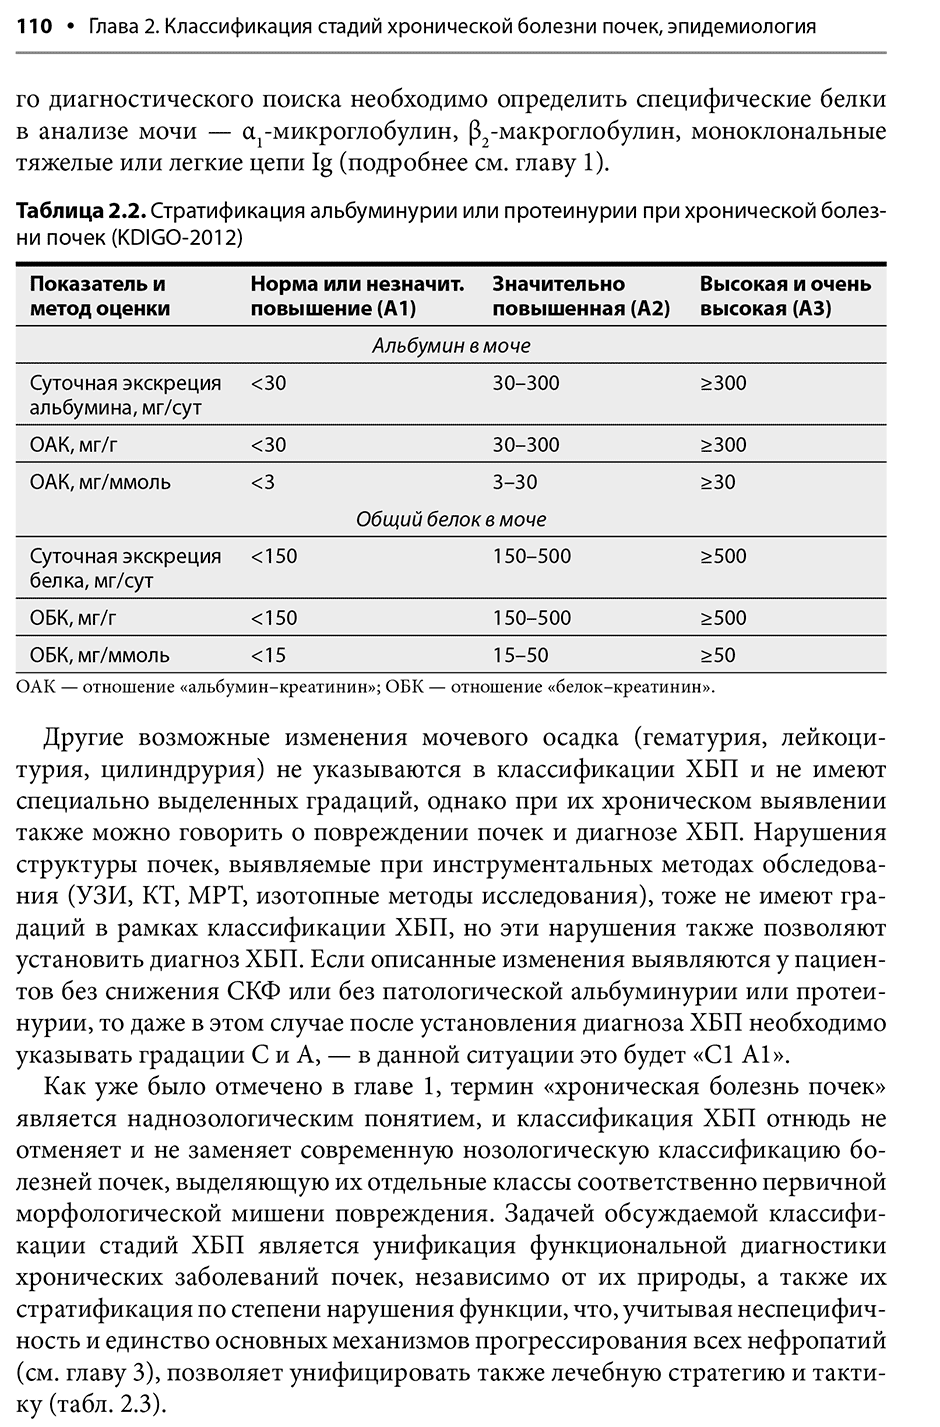 Таблица 2.2. Стратификация альбуминурии или протеинурии при хронической болезни почек (KDIGO-2012)